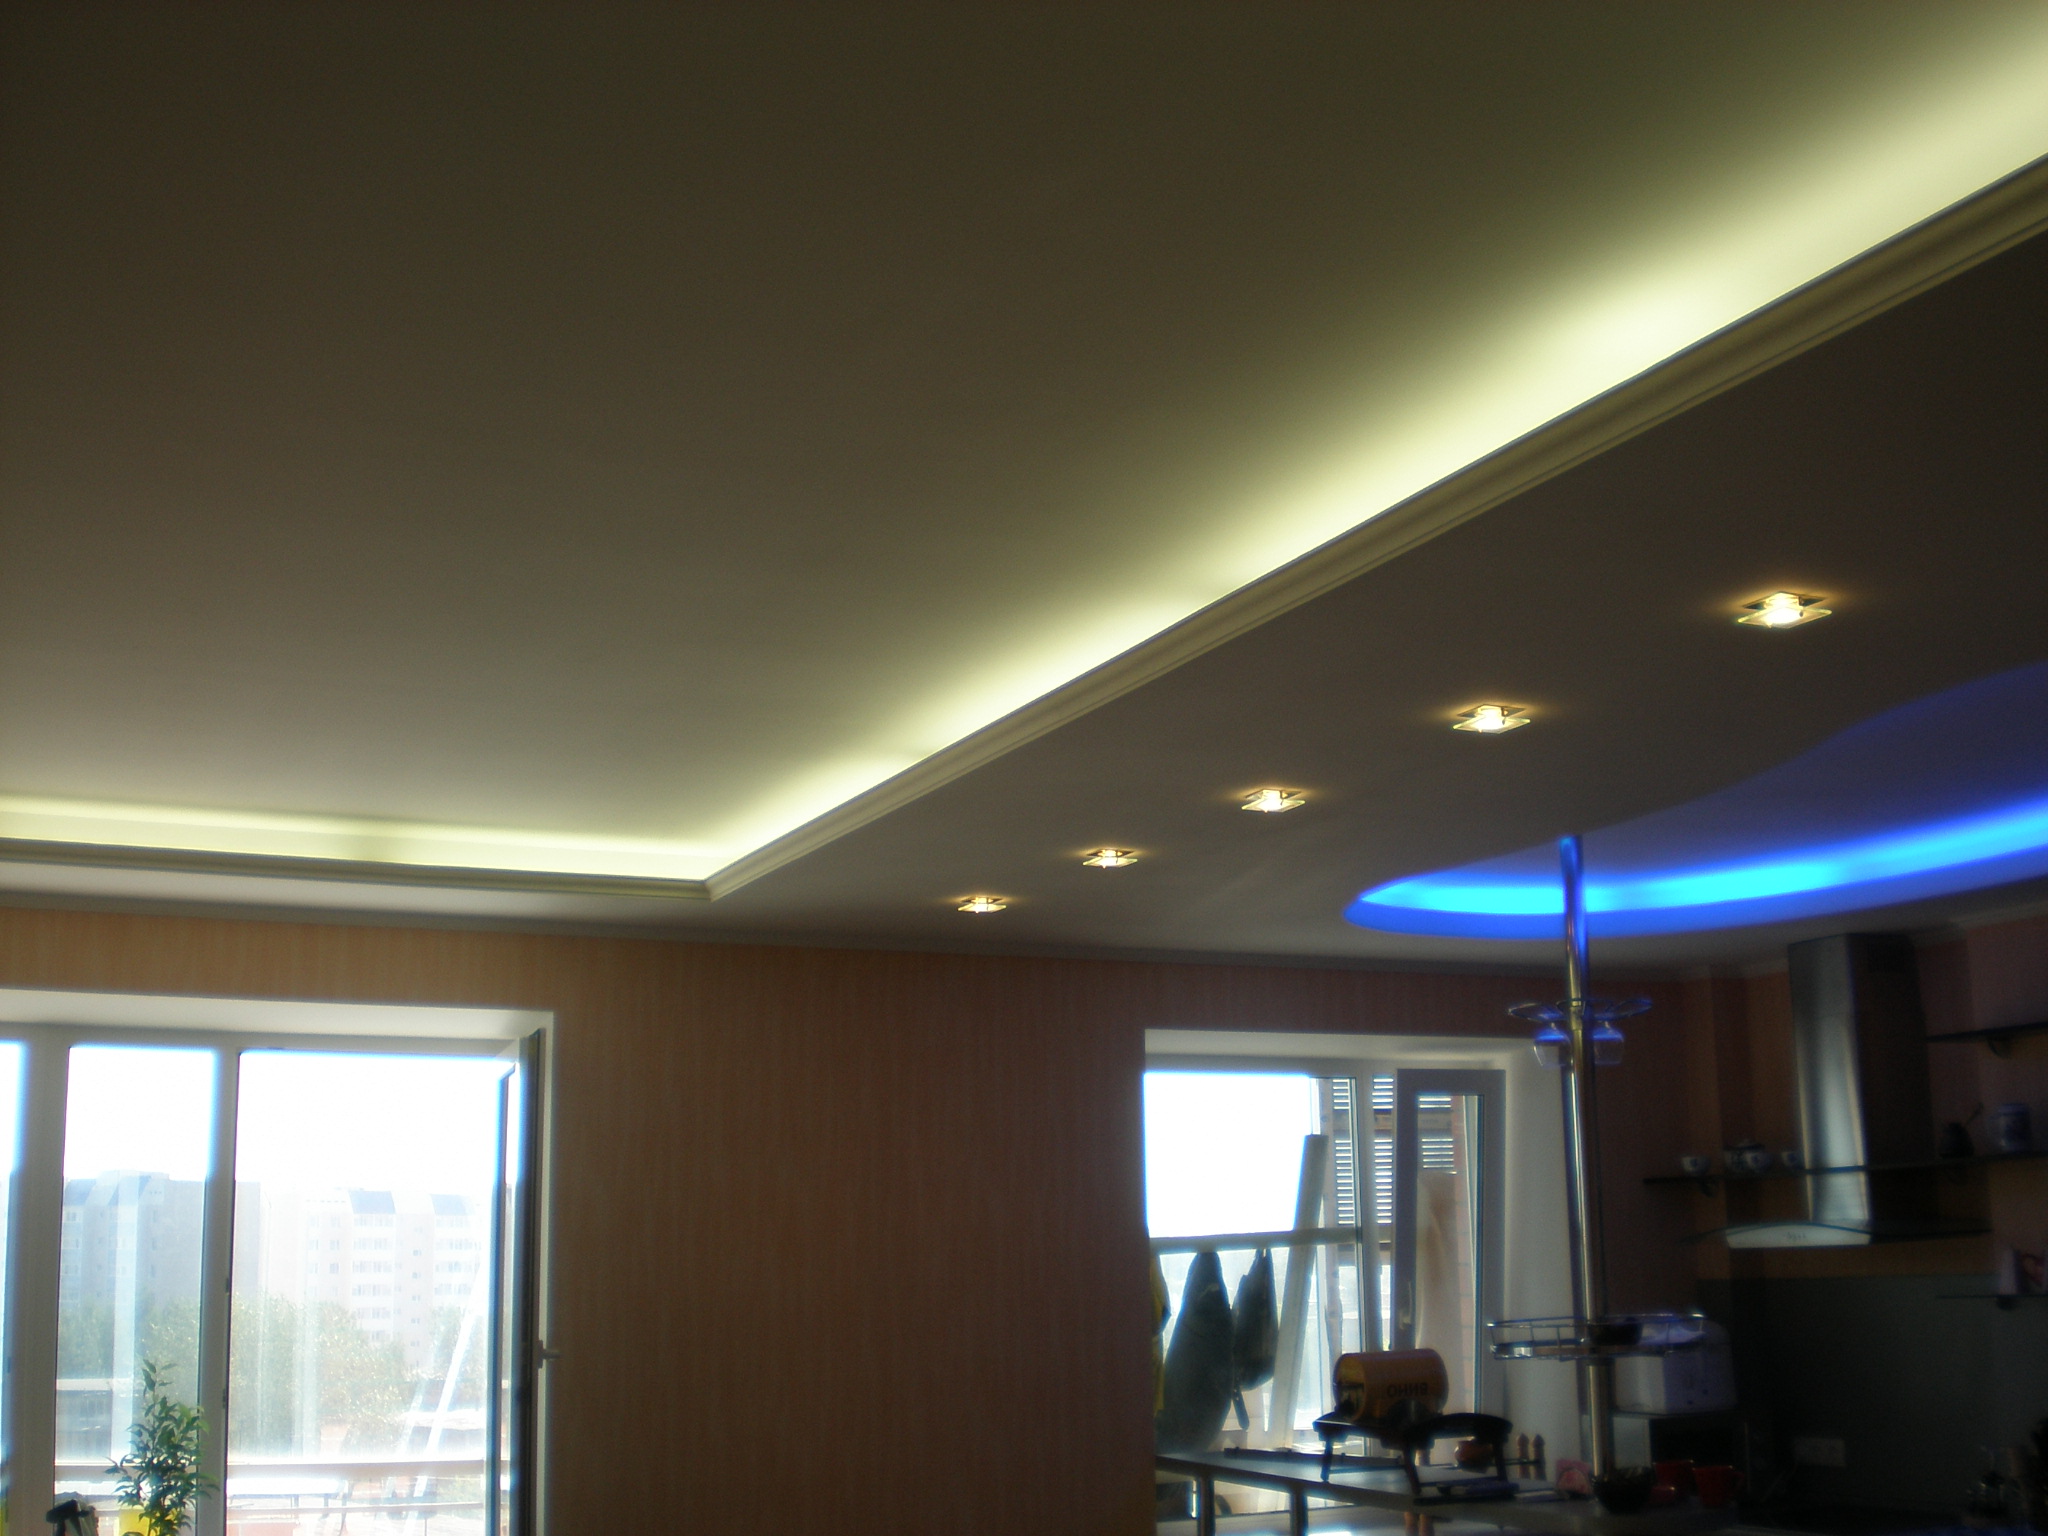 Двойной потолок из гипсокартона с подсветкой фото